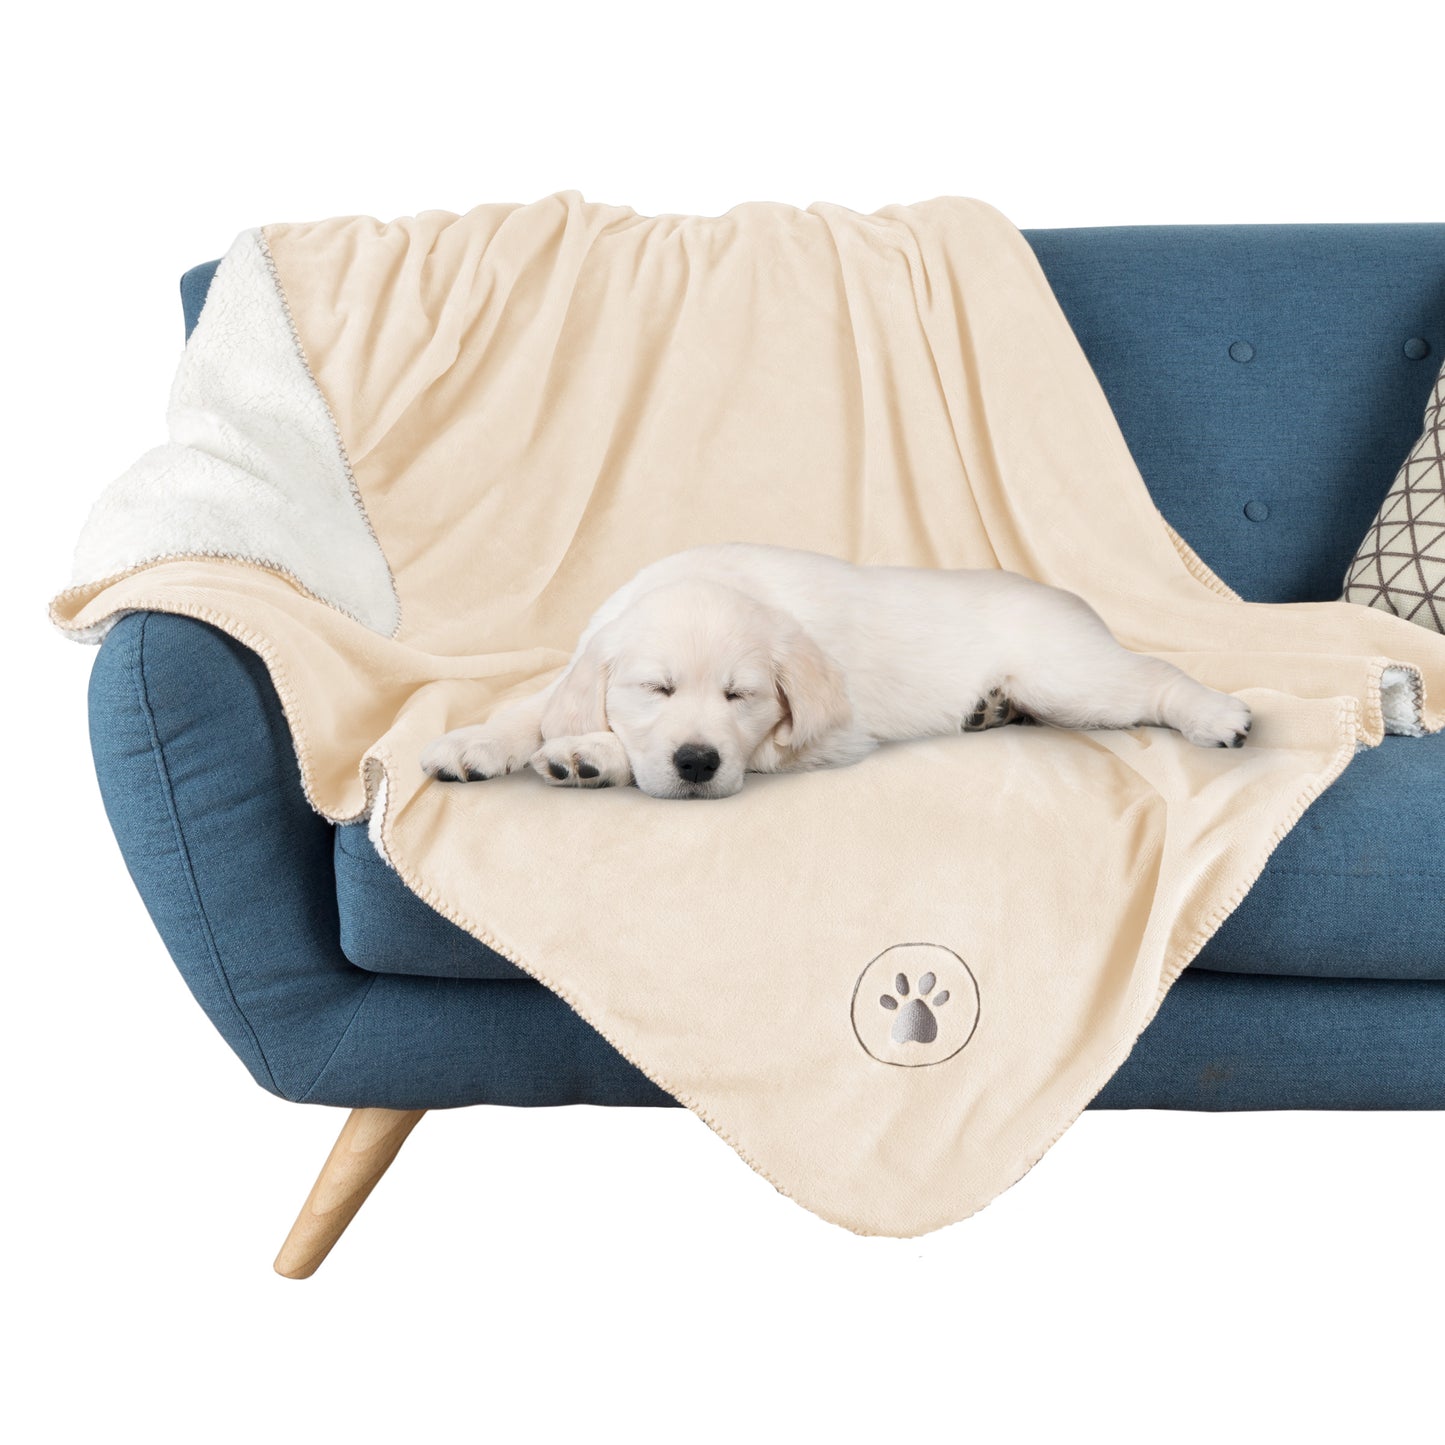 PETMAKER 50x60-Inch Waterproof Dog Blanket, Cream